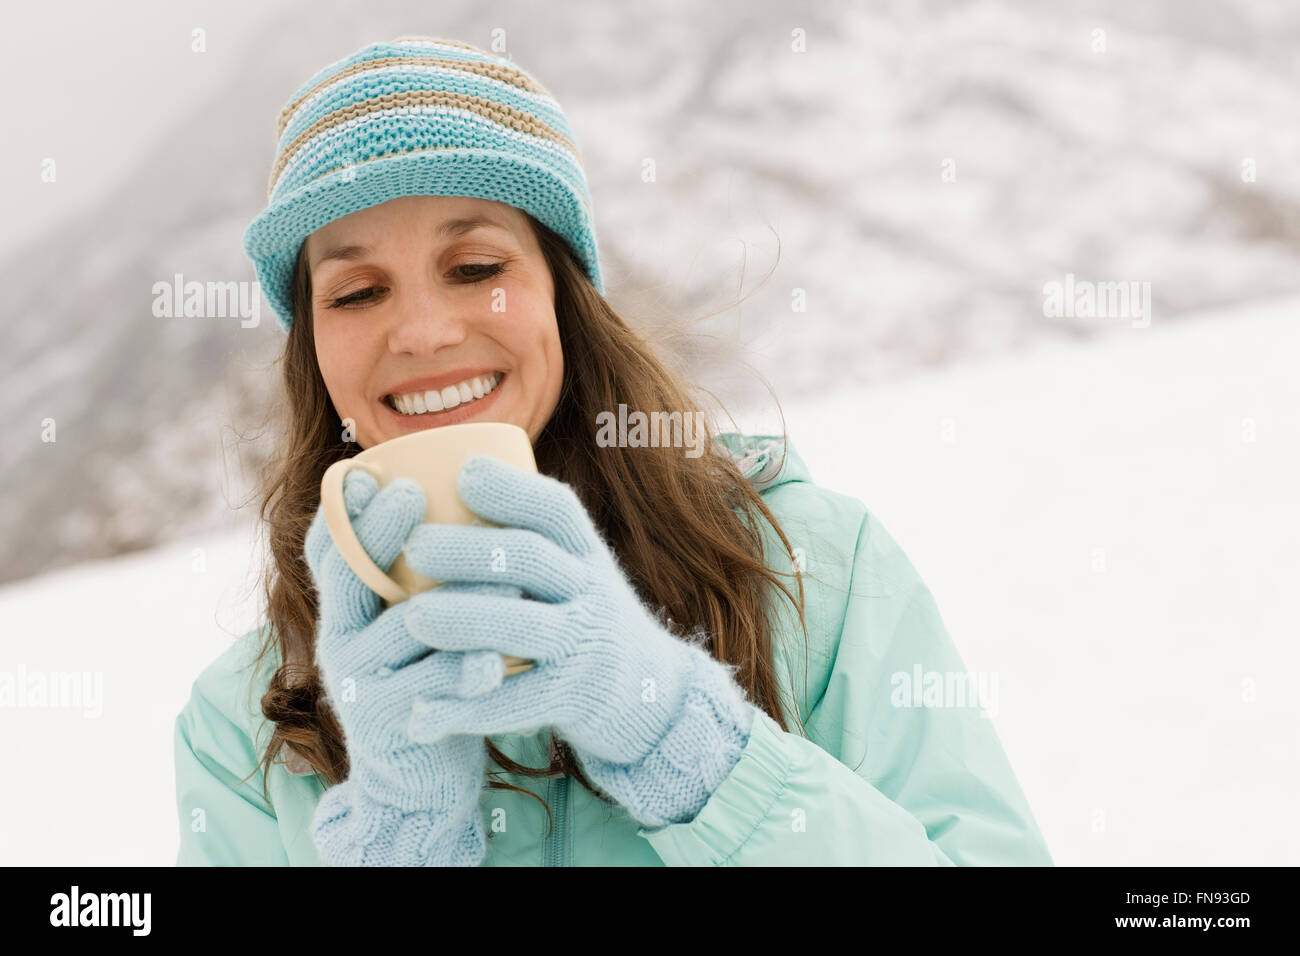 Une femme dans un chapeau tricoté bleu avec des gants, tenant une tasse de café. Banque D'Images